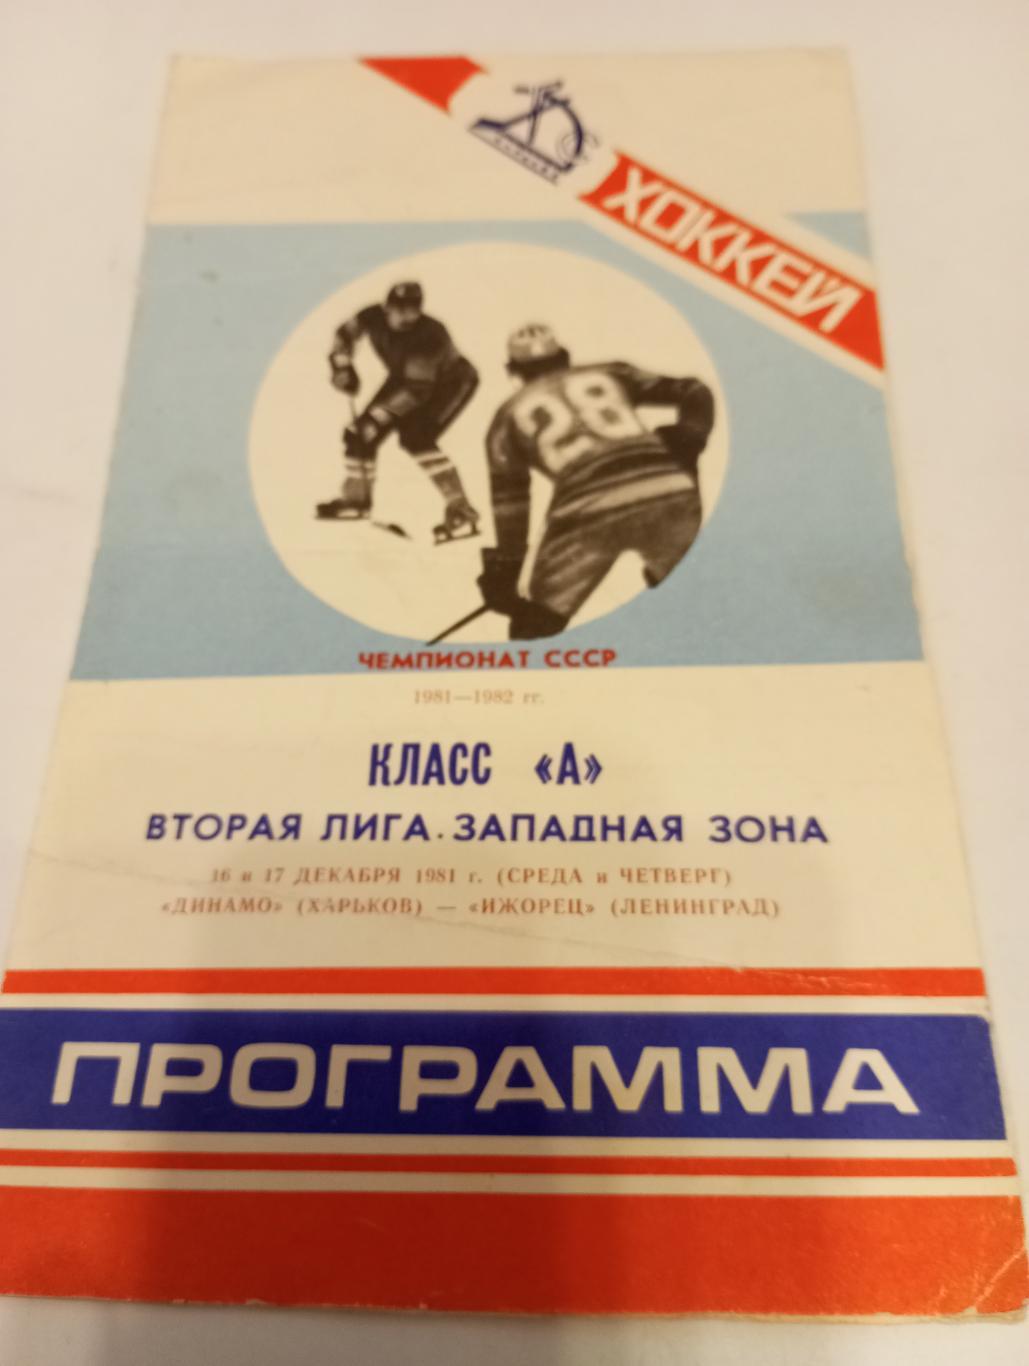 Динамо (Харьков) - Ижорец (Ленинград). 16/17.12.1981.